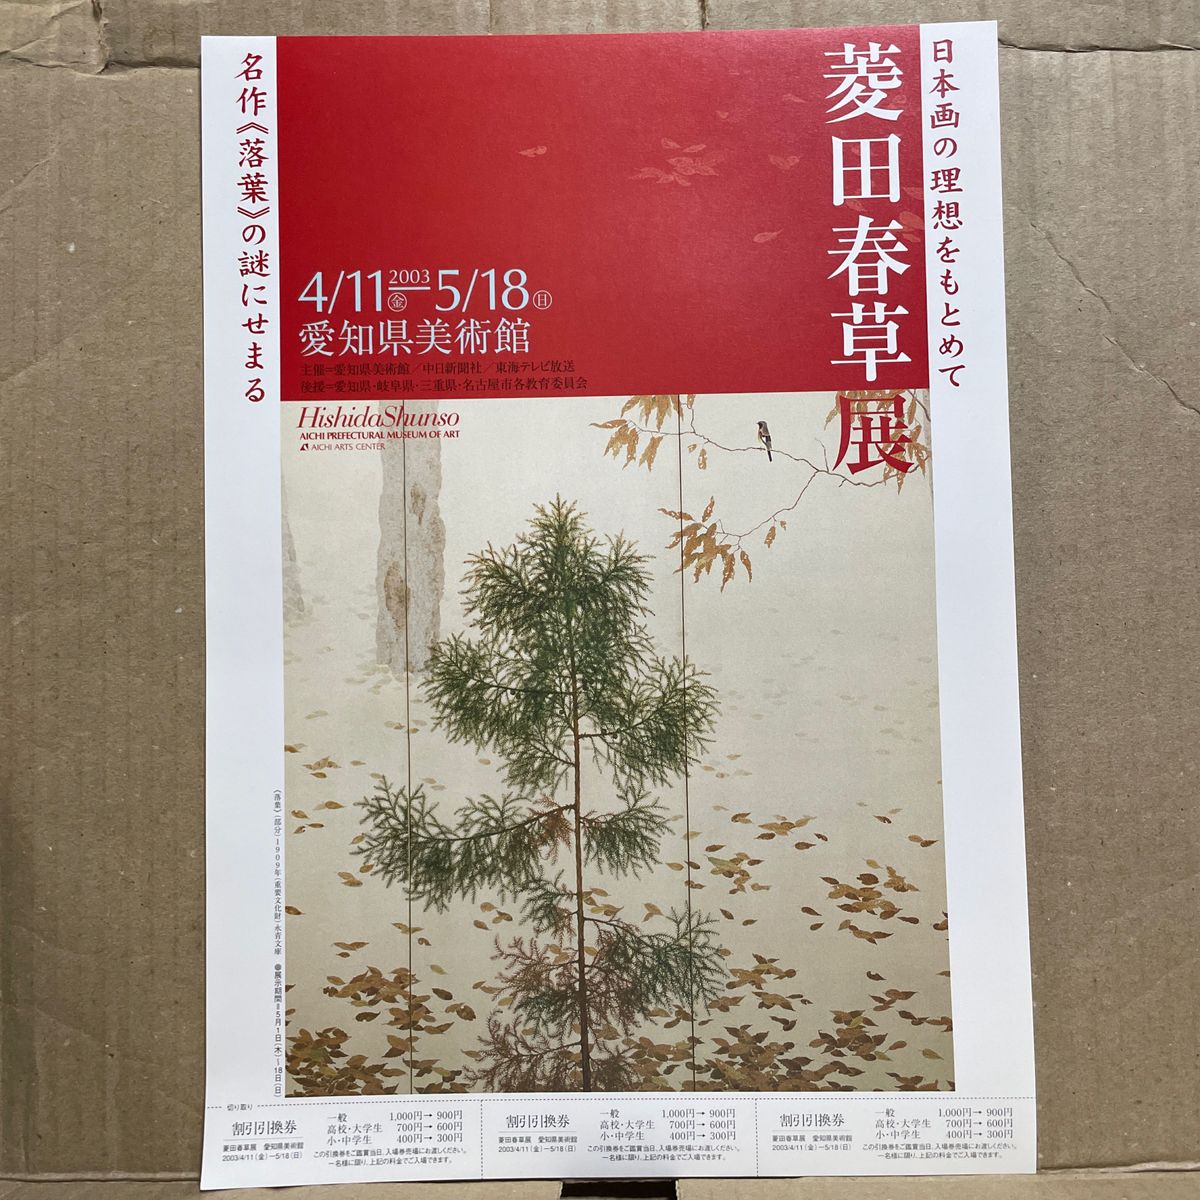 愛知県美術館『菱田春草展』（2003年）A4判チラシ